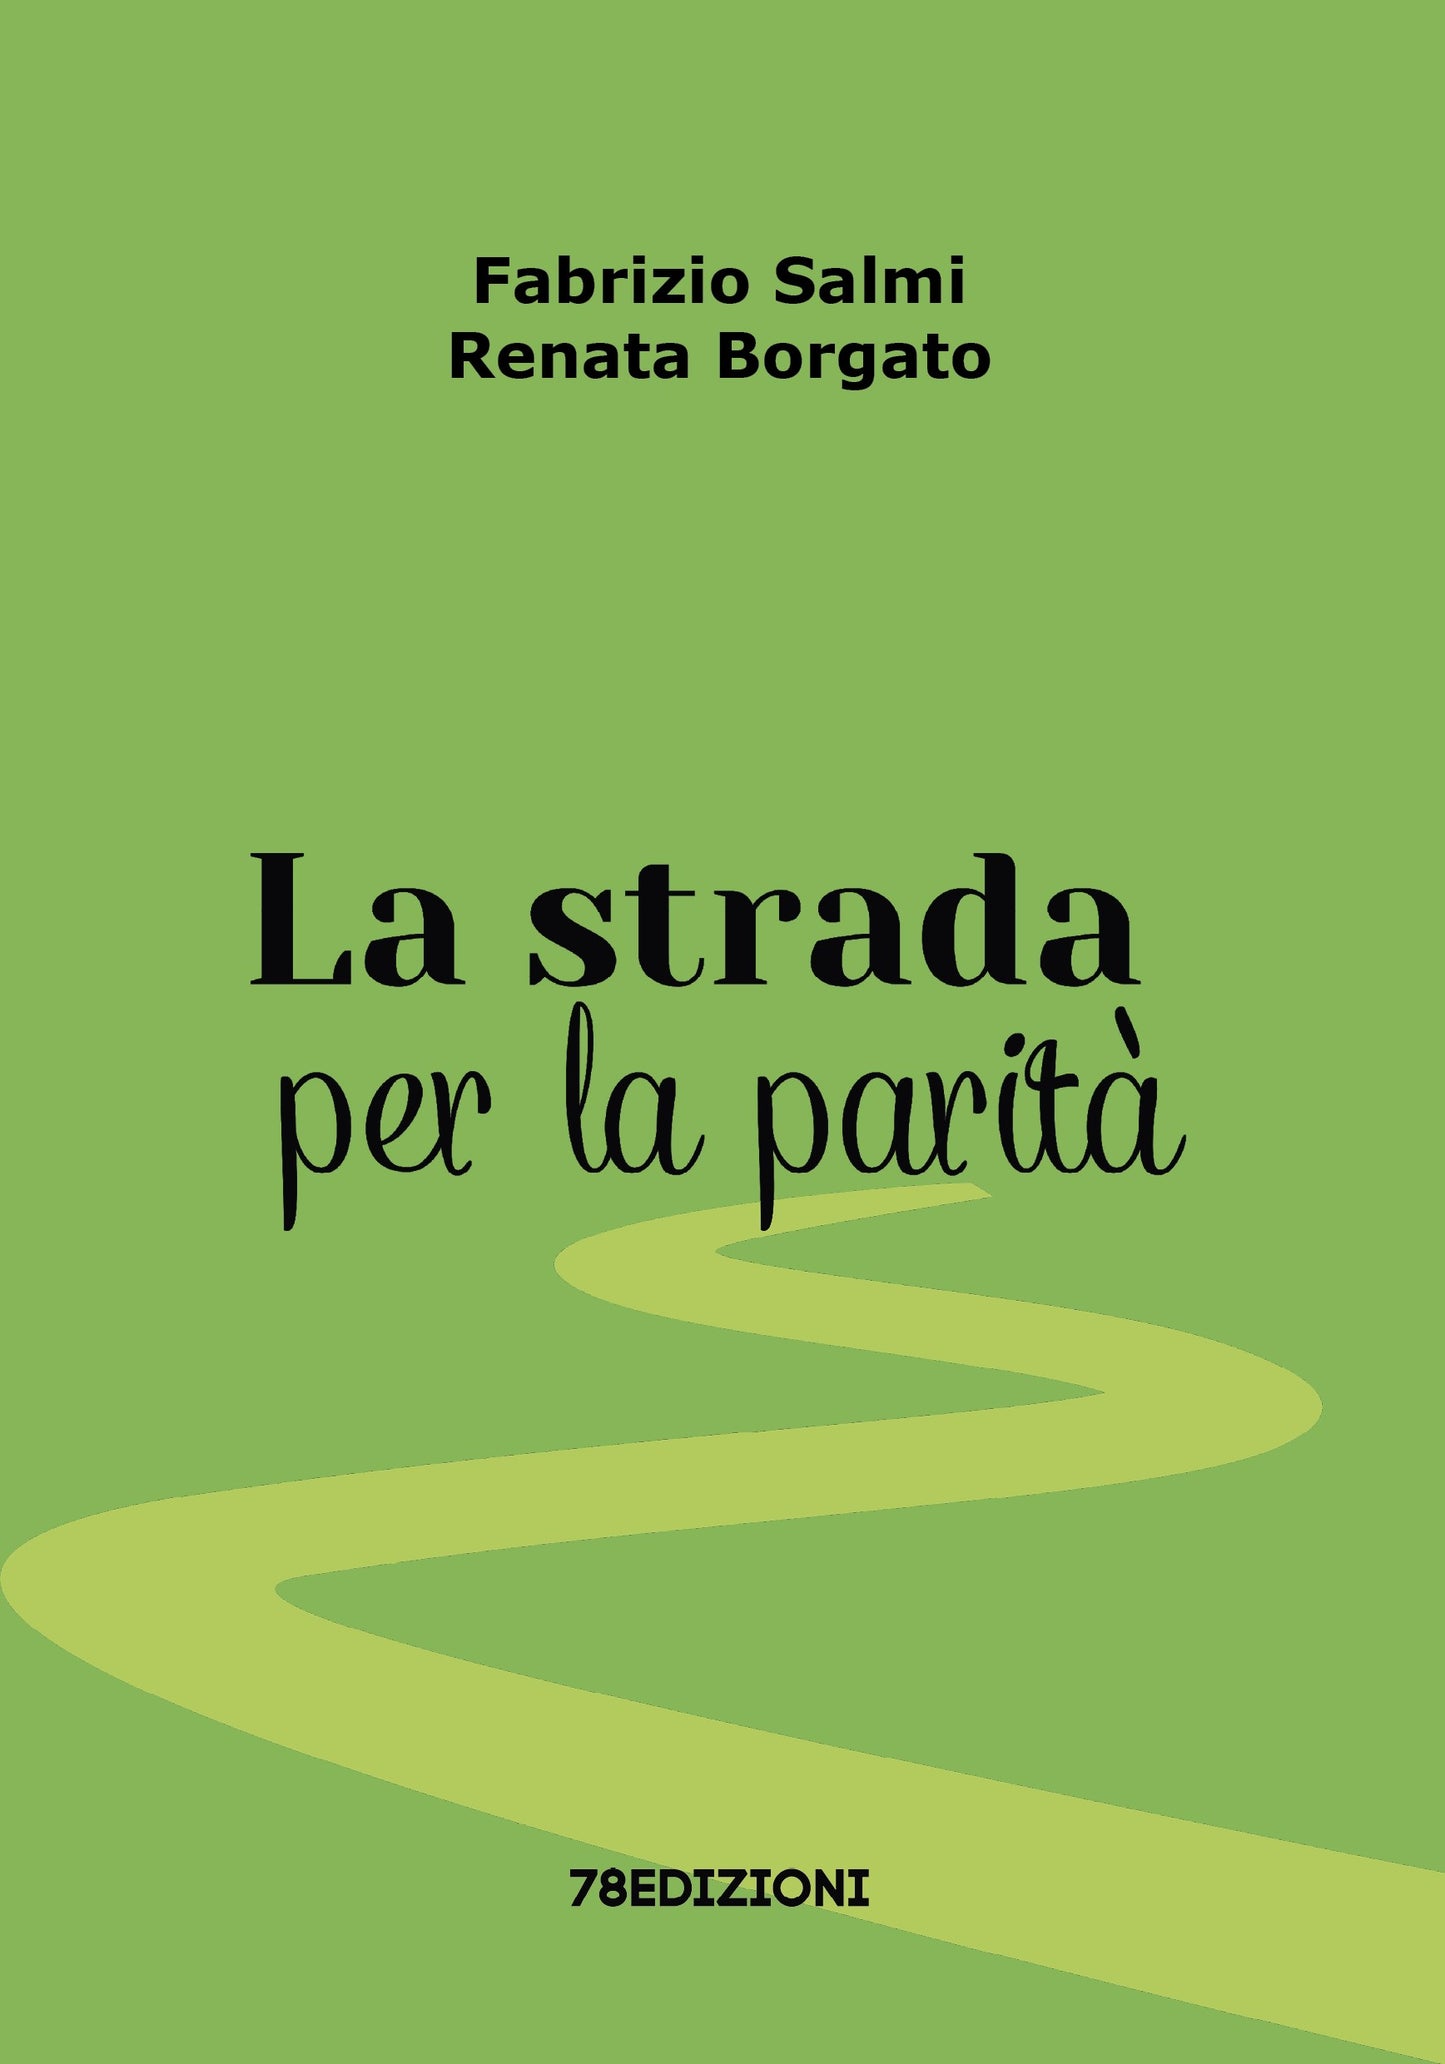 Fabrizio Salmi - Renata Borgato - La strada per la parità